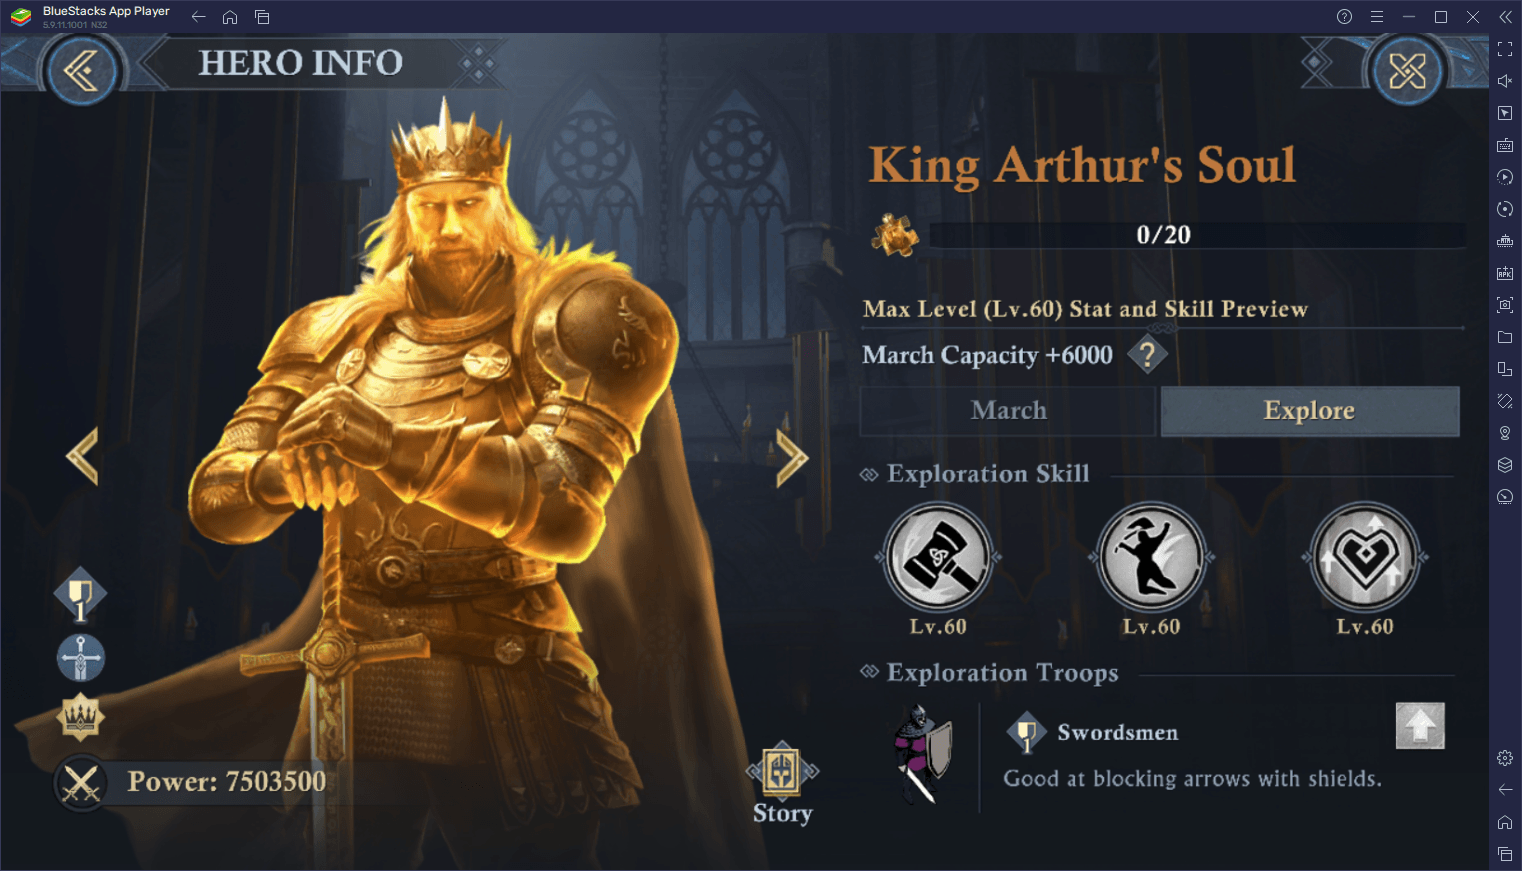 Lista de niveles de King of Avalon con los mejores héroes del juego